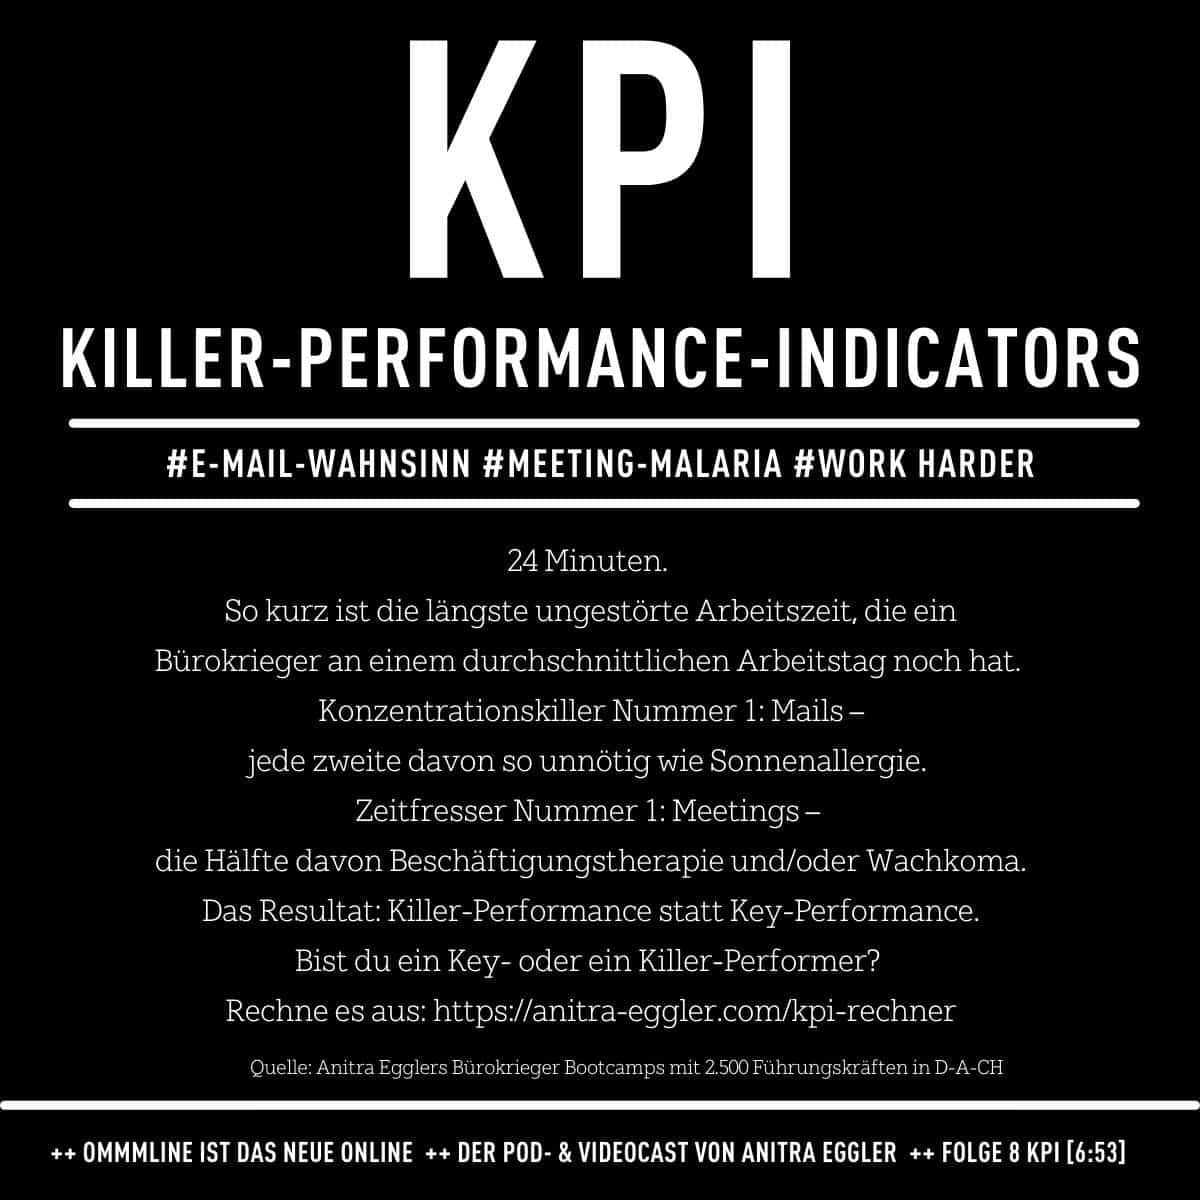 KPI Killer Performance Rechner